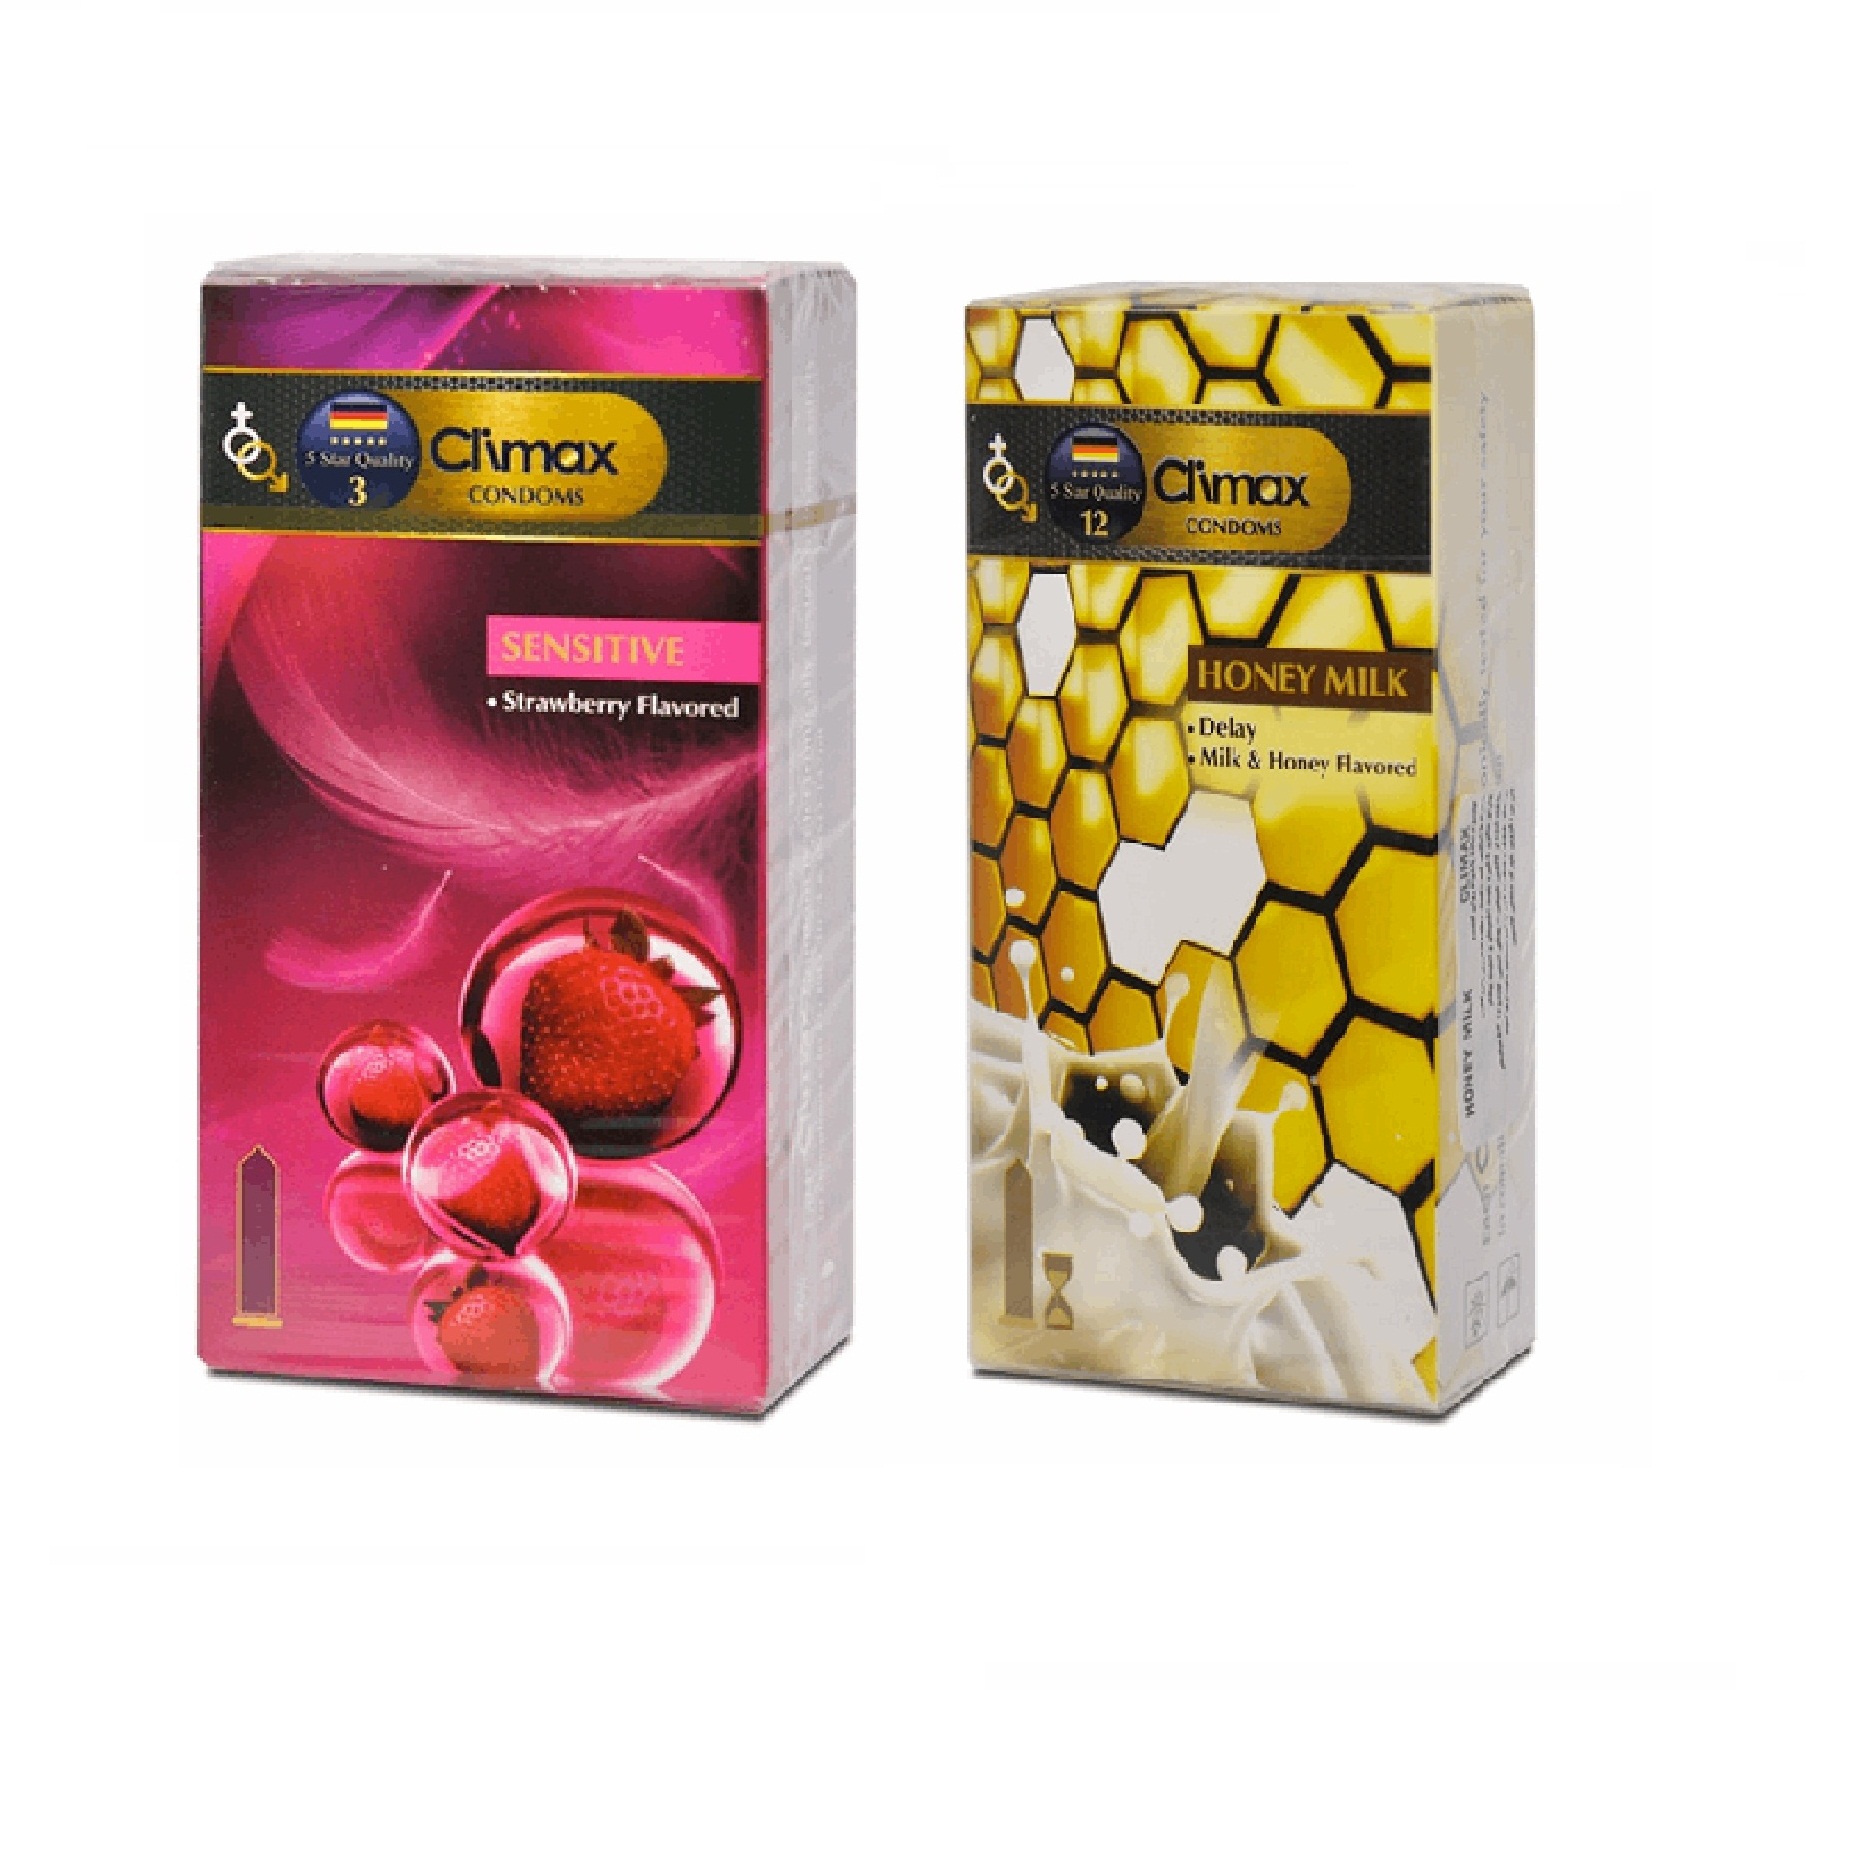 نکته خرید - قیمت روز کاندوم کلایمکس مدل Sensitive بسته 12 عددی به همراه کاندوم کلایمکس مدل Honey Milk بسته 12 عددی خرید